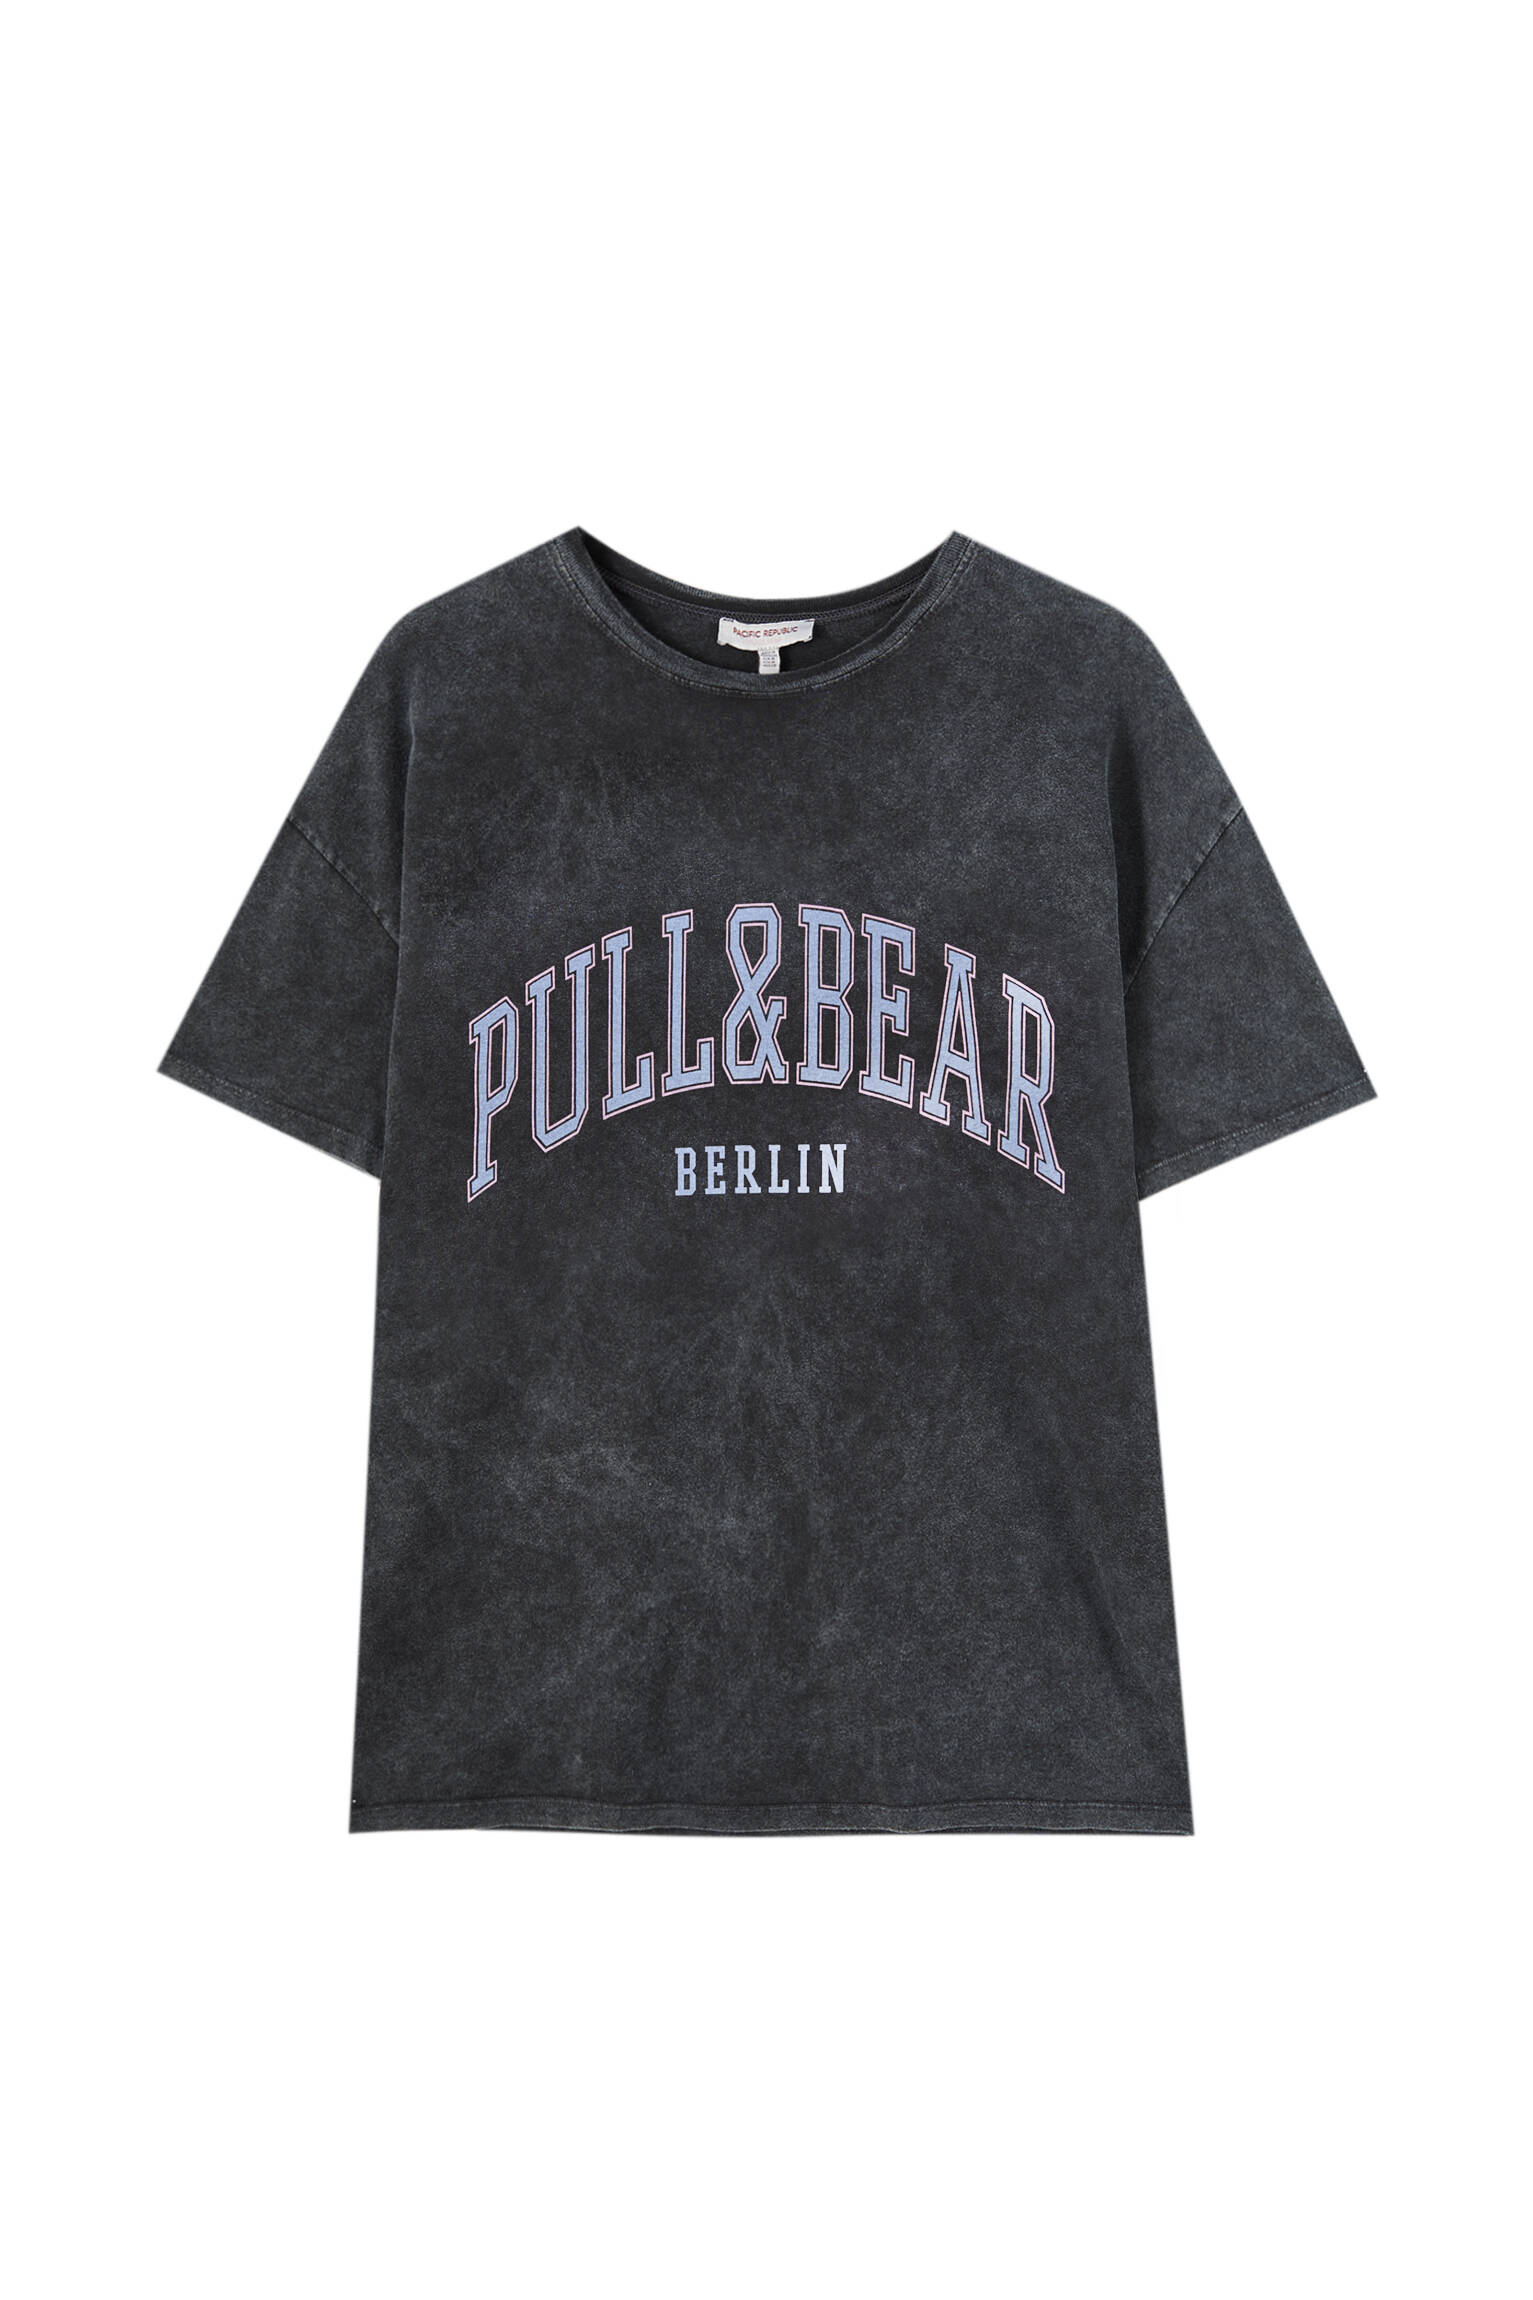 Pull&bear Femme T-shirt 100 % Coton à Col Rond Et Manches Courtes, Avec Logo Pull&bear Et Inscription Berlin Contrastante Sur La Poitrine. Noir DÉlavÉ M